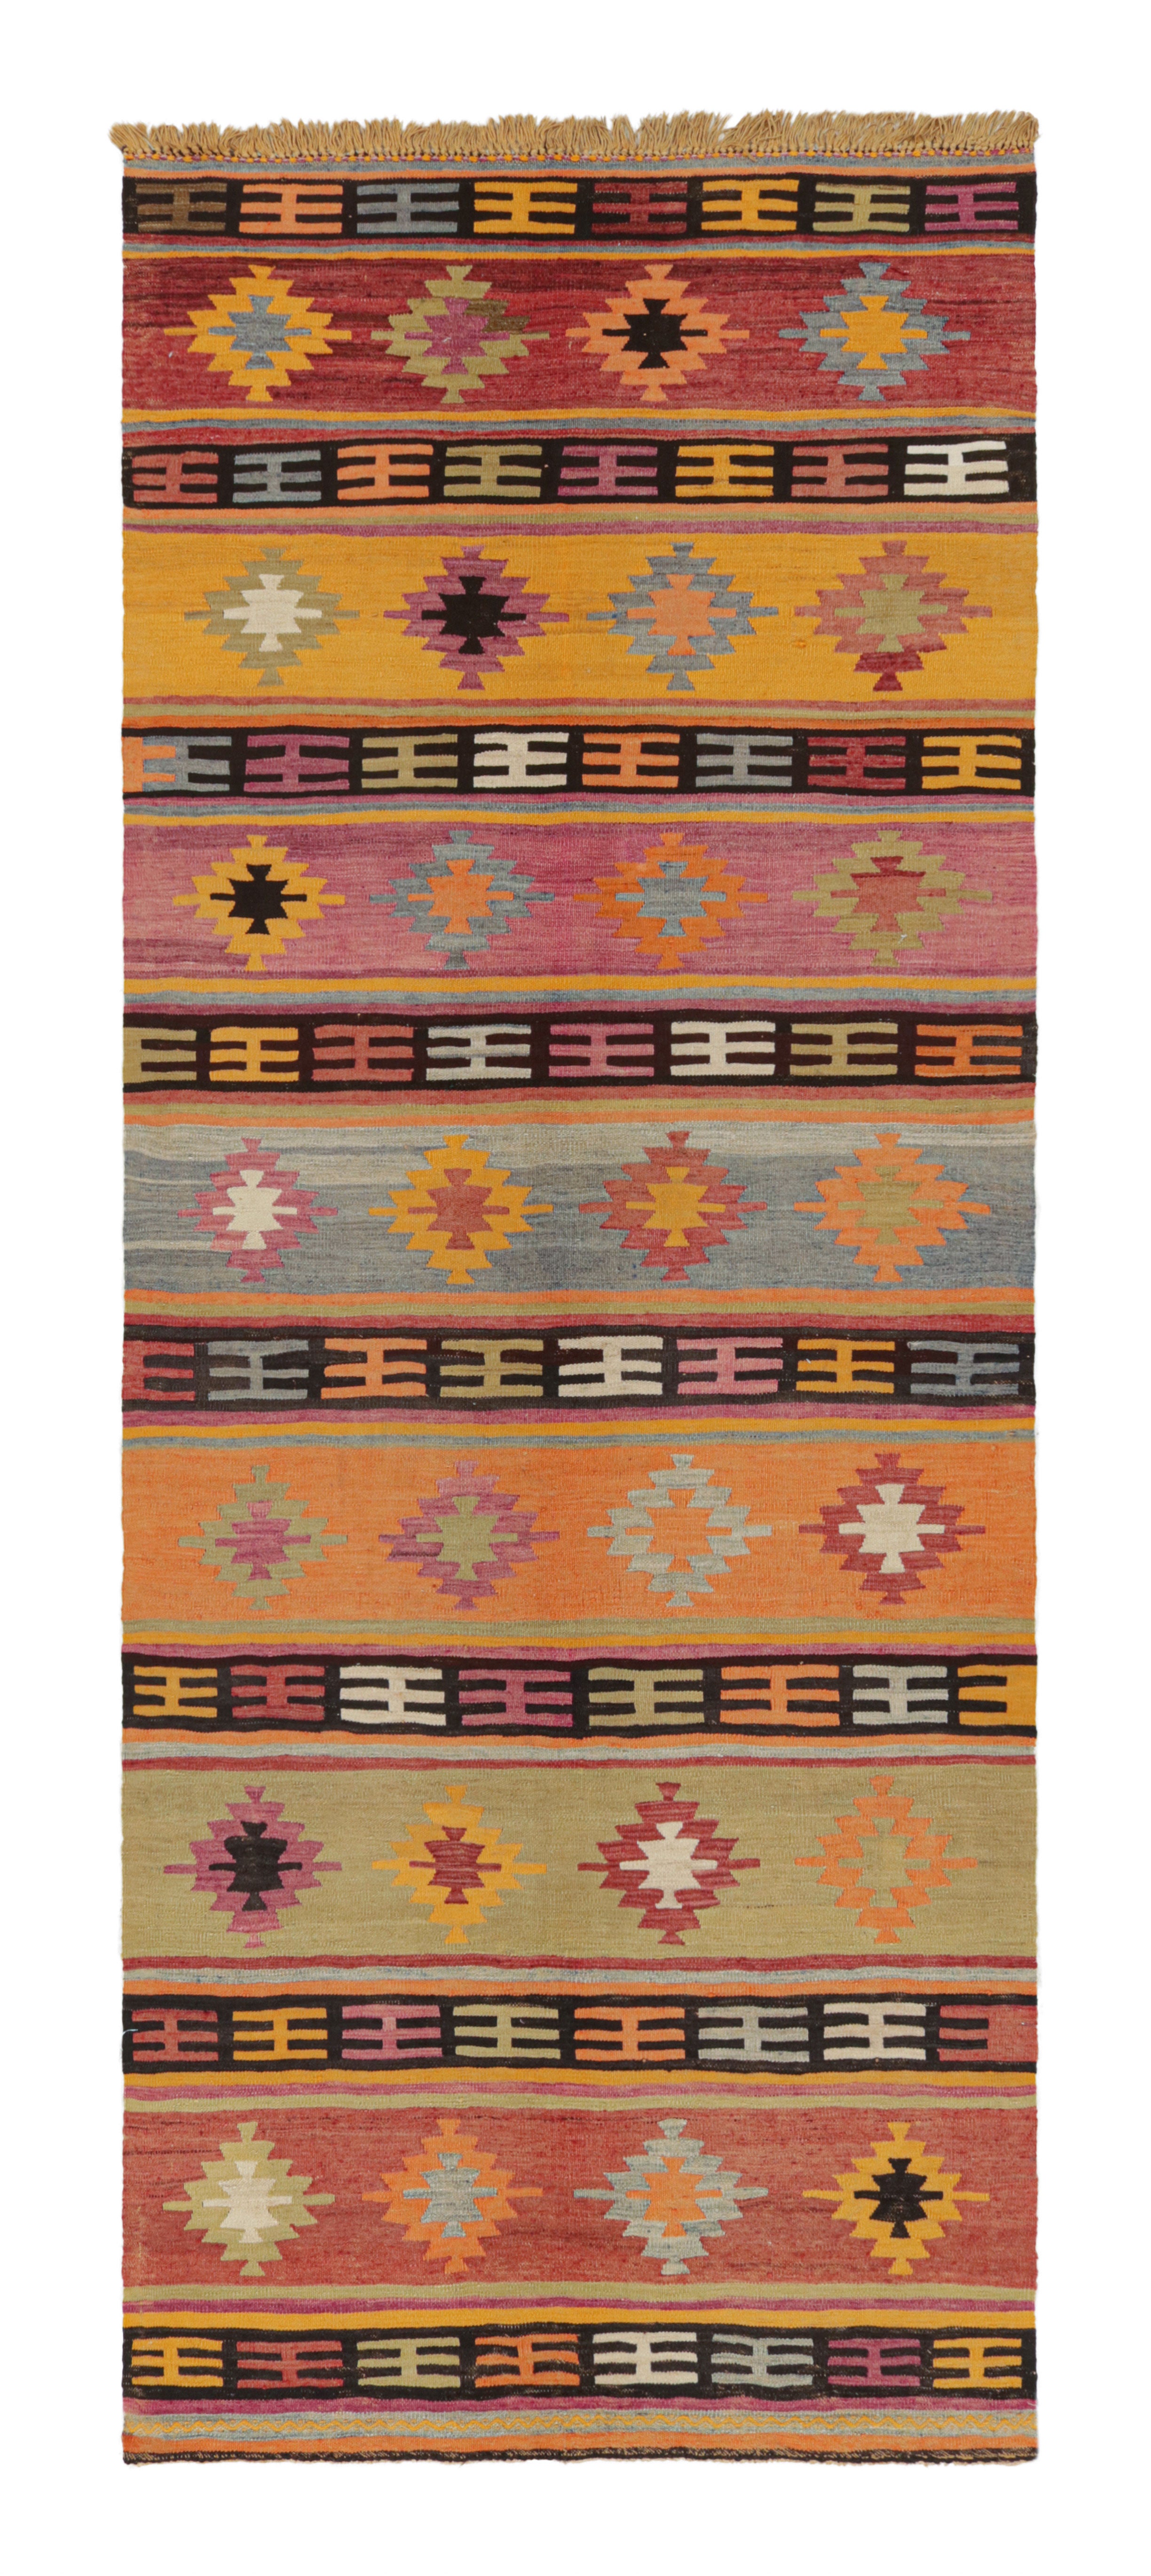 Vintage Turkish Orange and Purple Multi-Color Wool Kilim Rug by Rug & Kilim